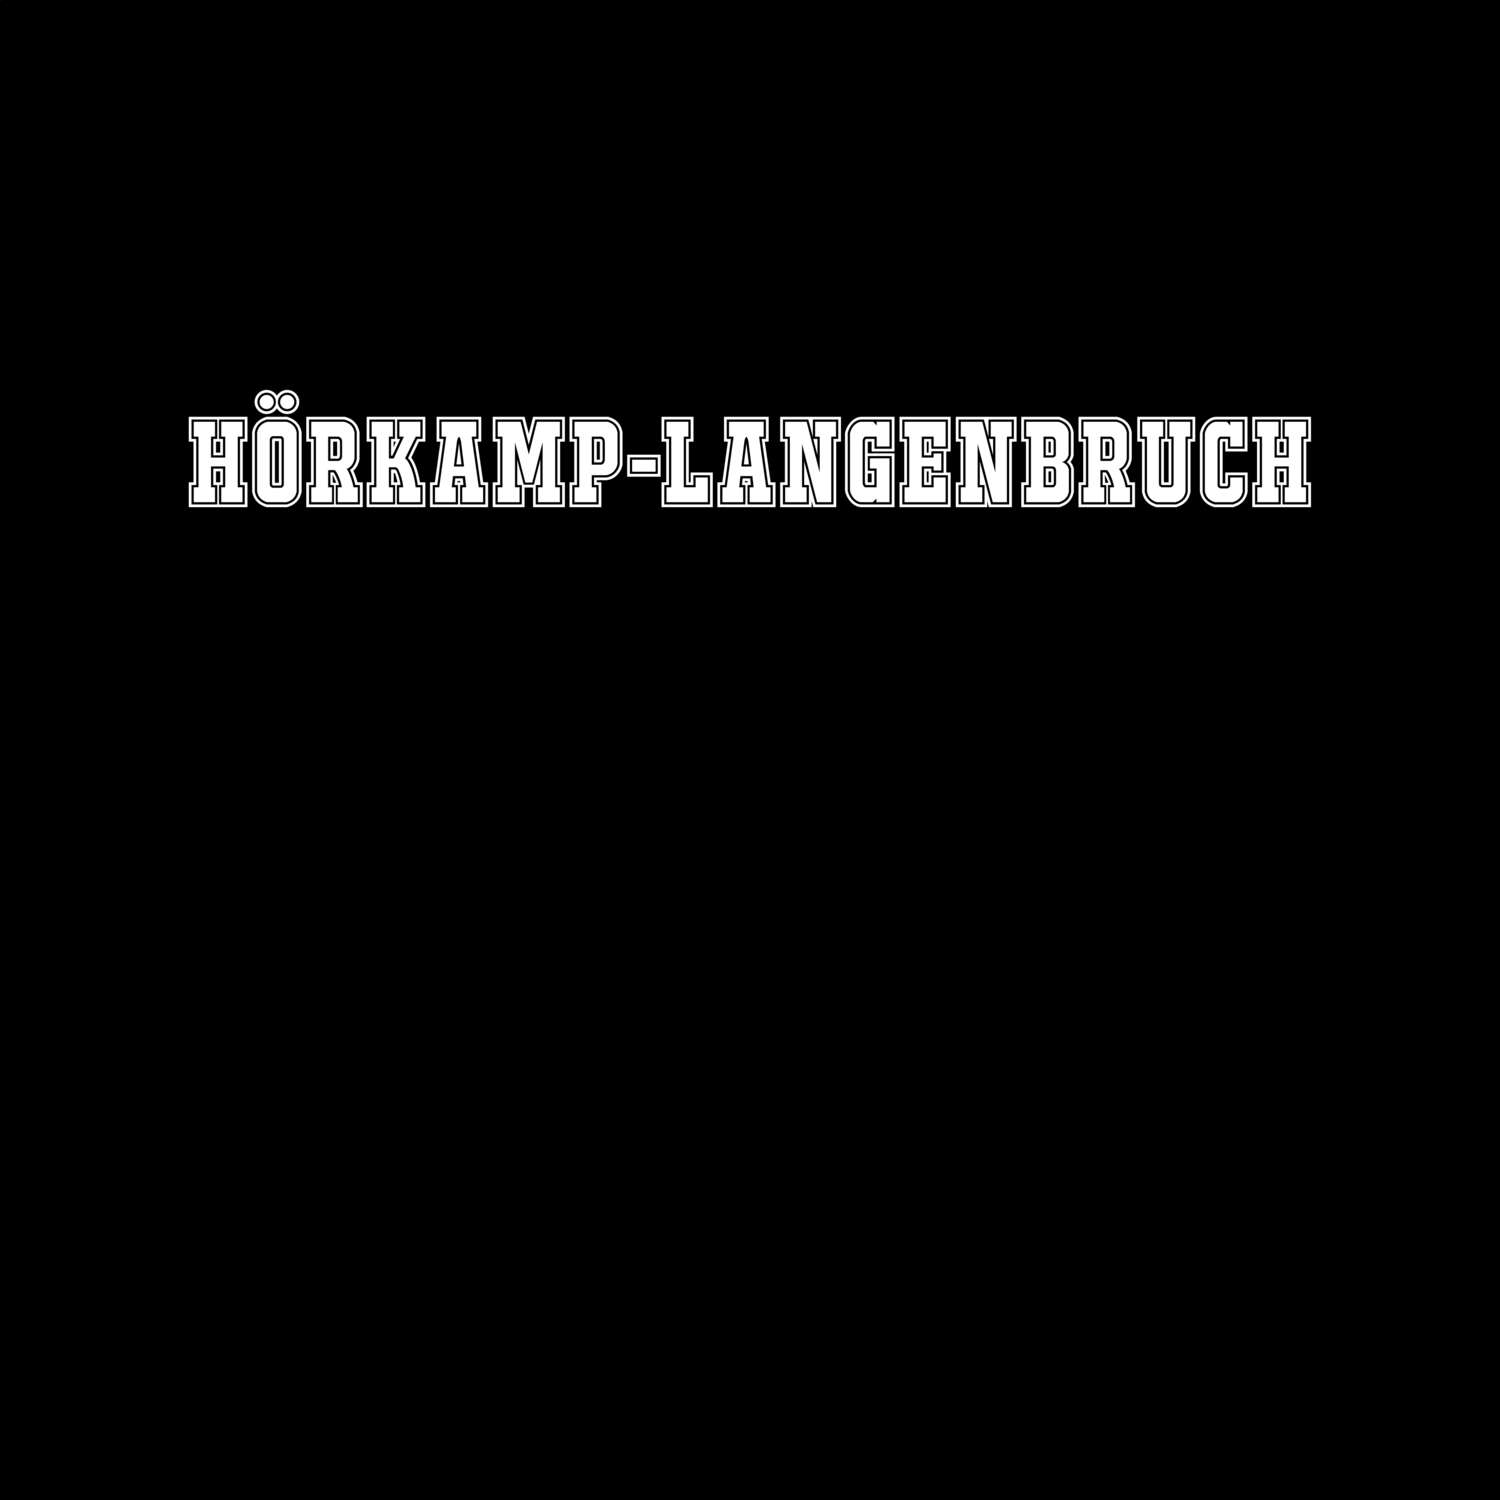 Hörkamp-Langenbruch T-Shirt »Classic«